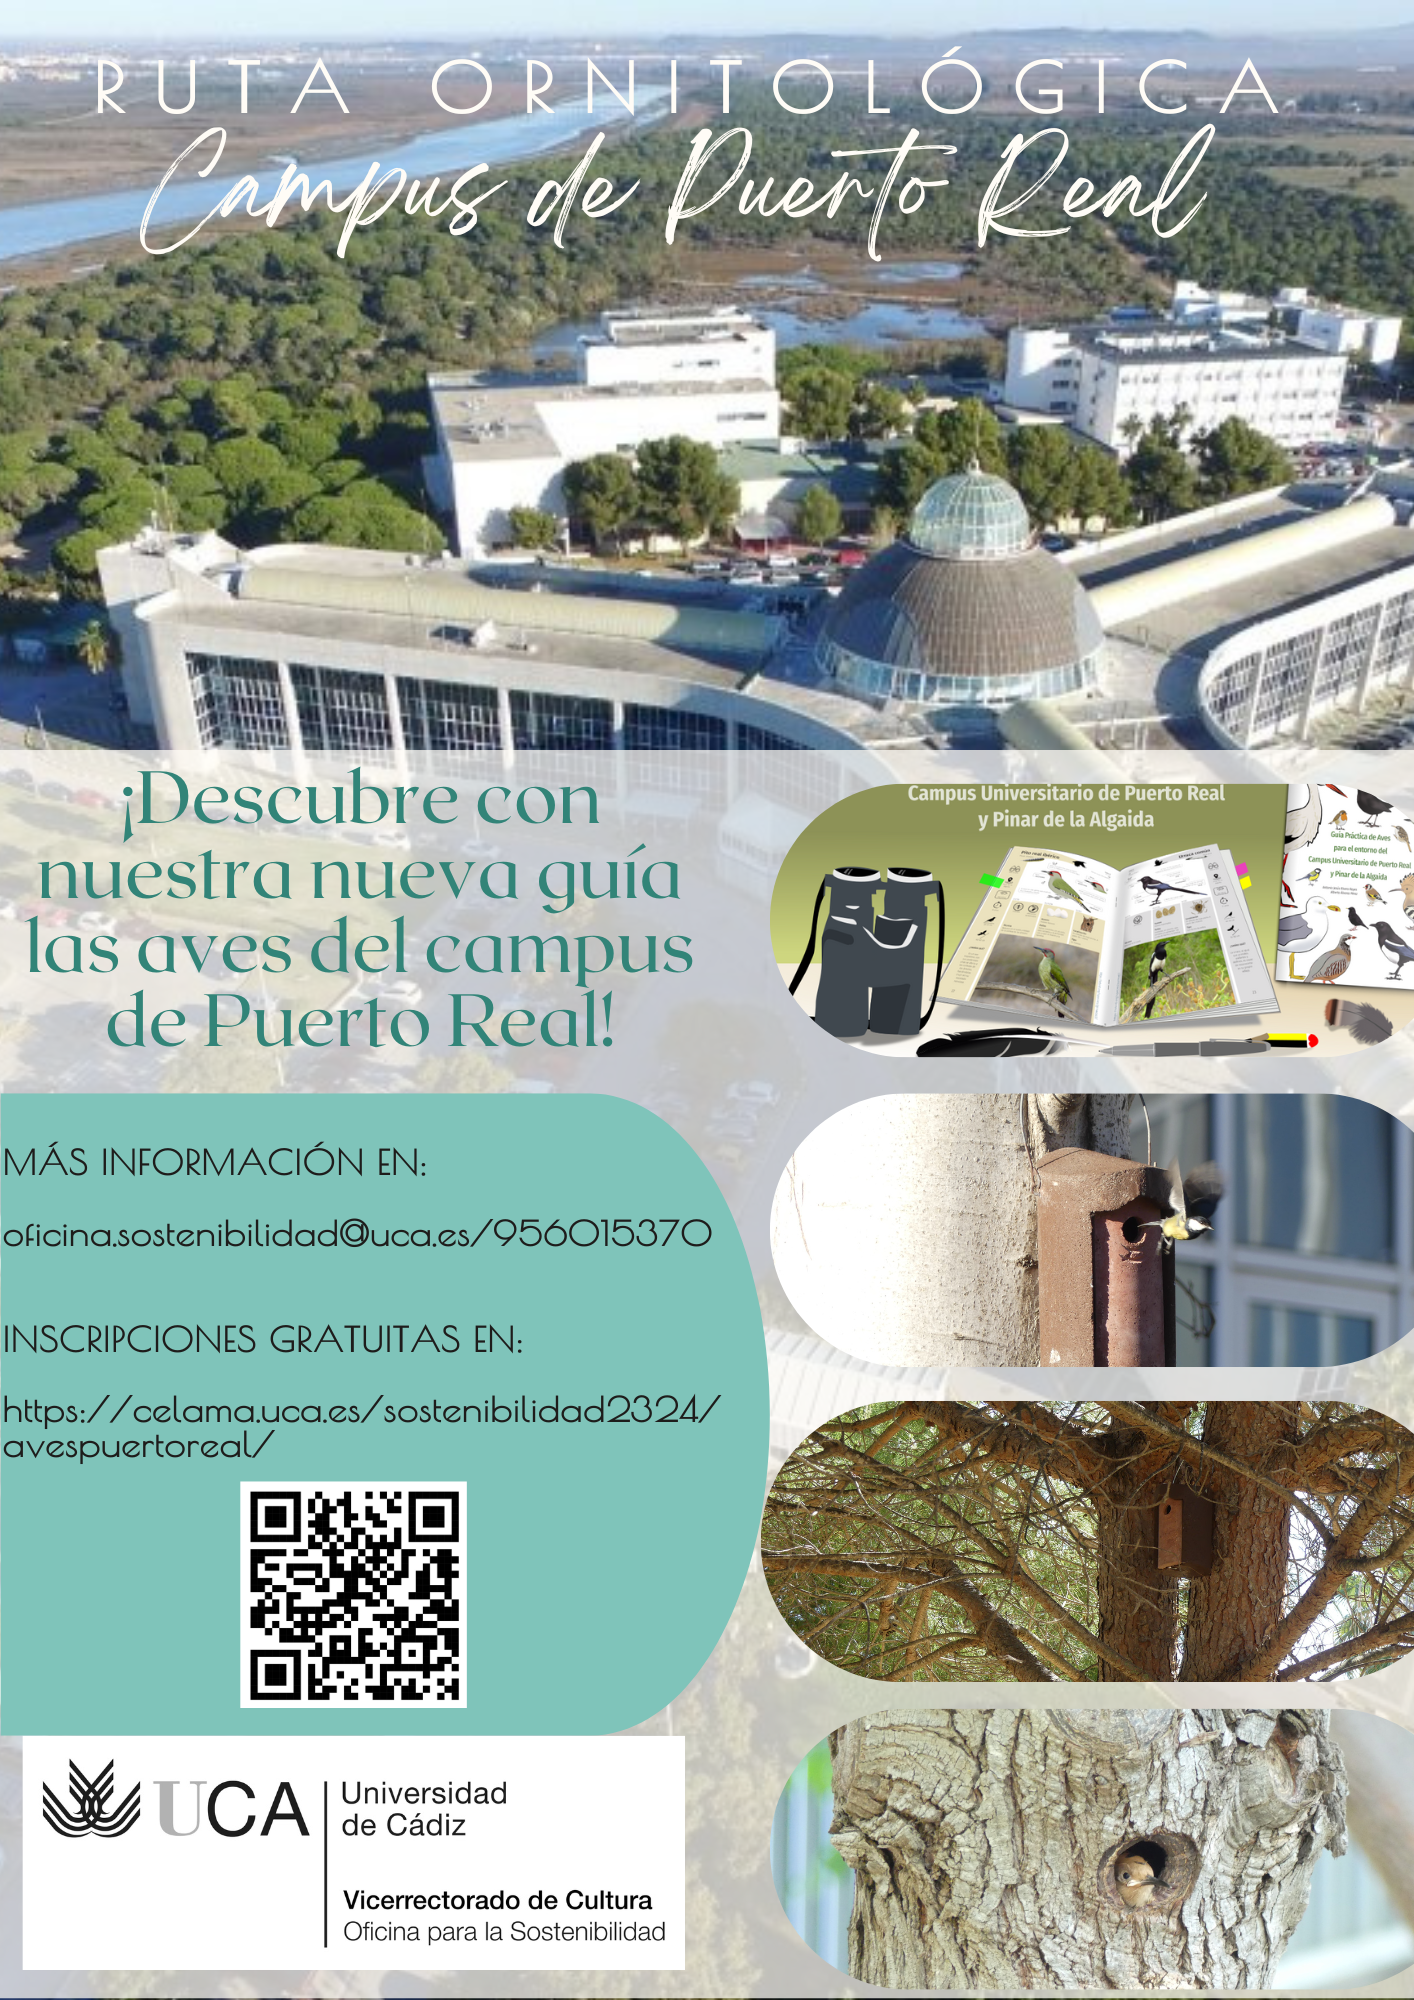 Descubre con nuestra nueva guía las aves del campus de Puerto Real